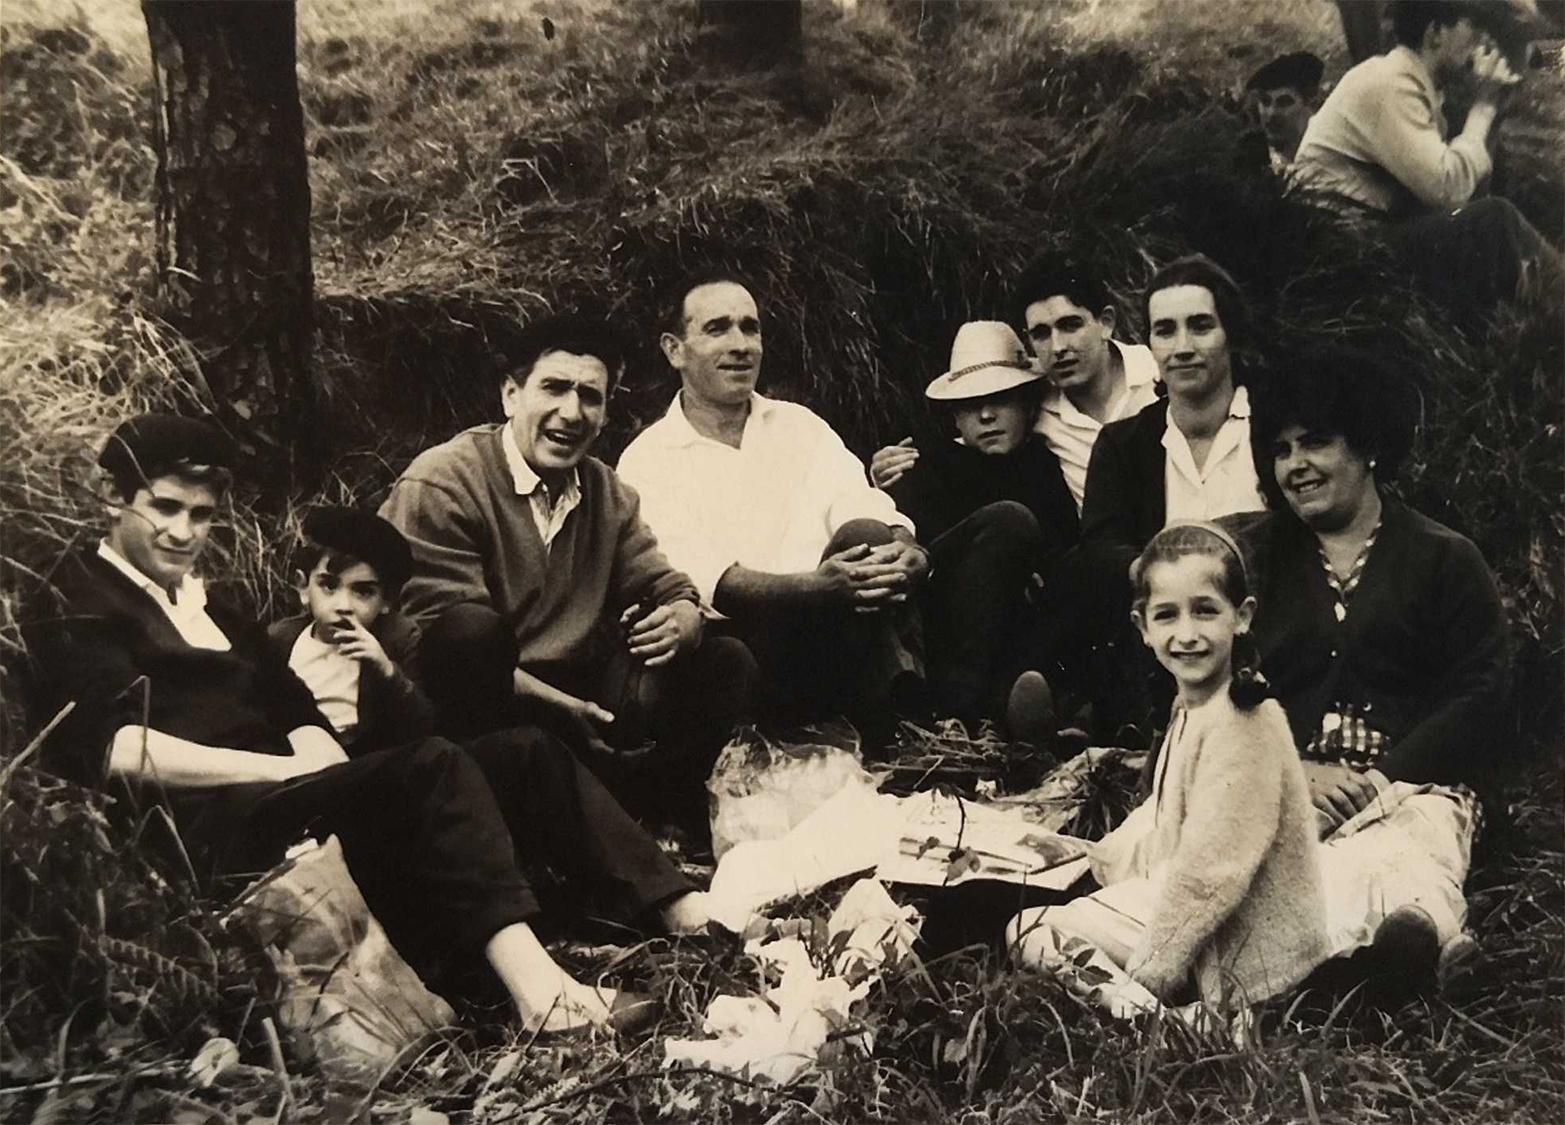 Almuerzo campestre en el Bizkargi, c. 1960. Foto Muñoz